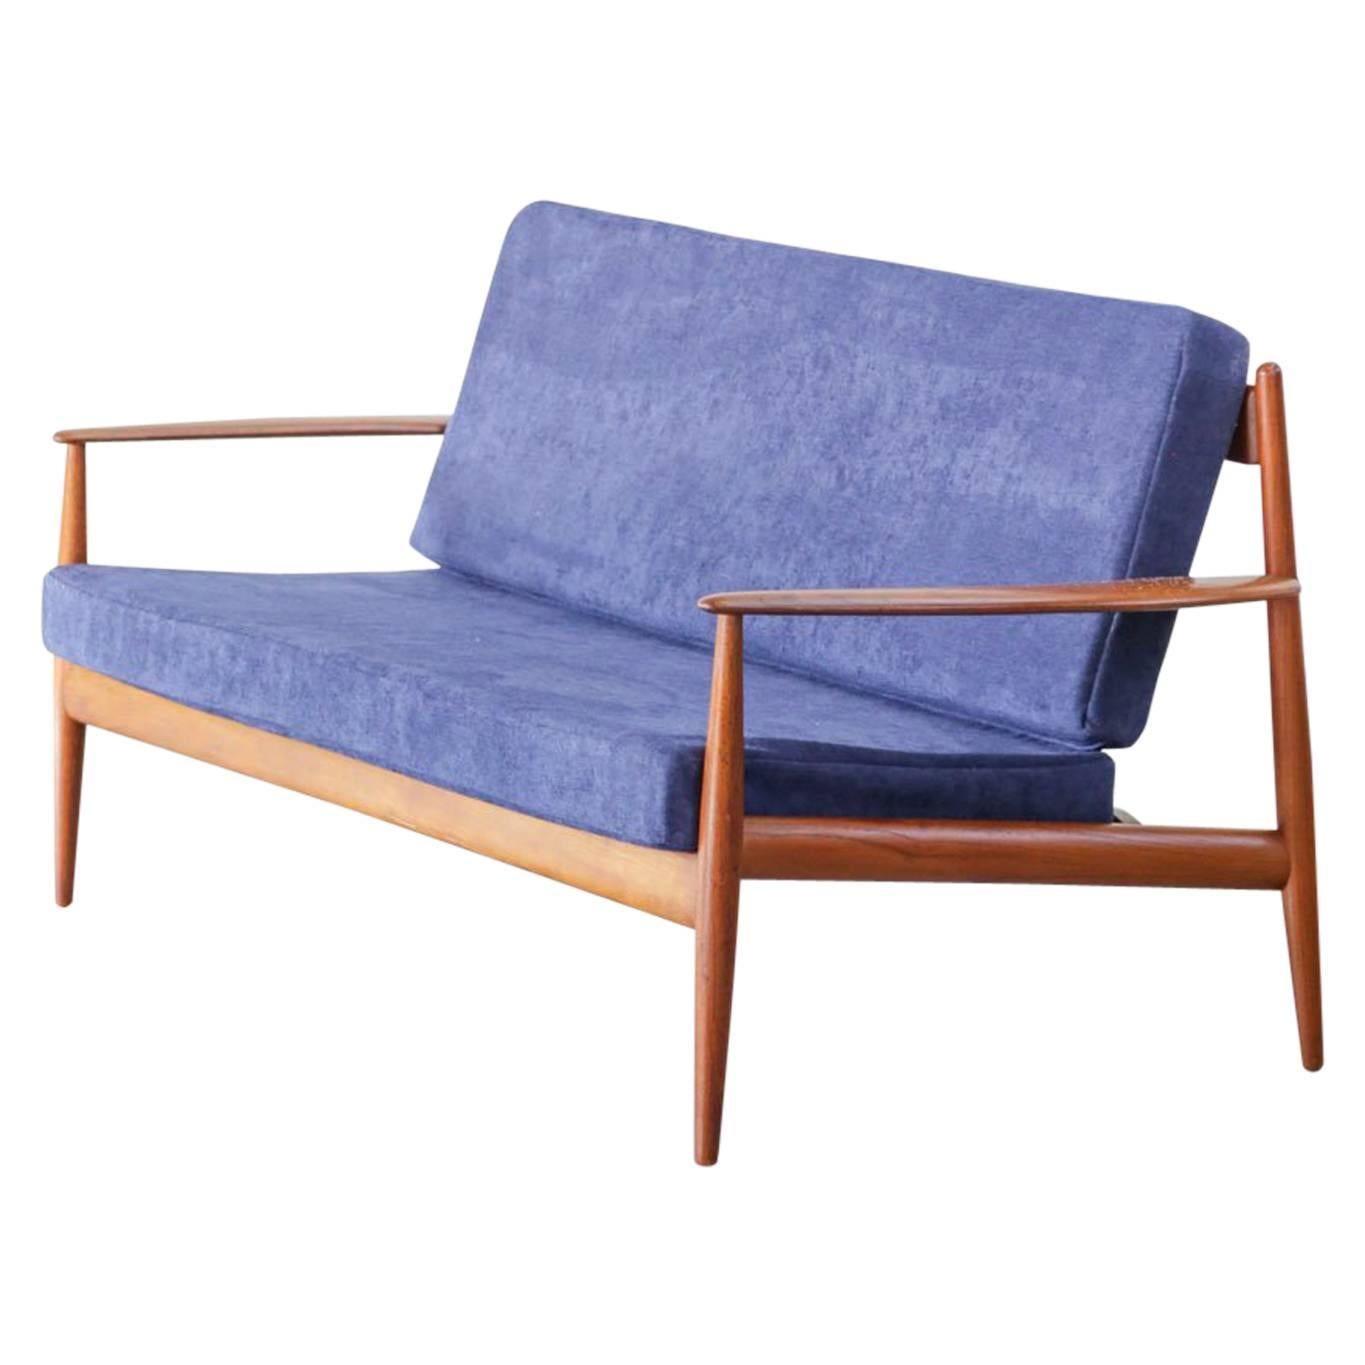 Modernes dänisches Sofa von Grete Jalk, Frankreich, Sohn und Sohn, neu gepolstert